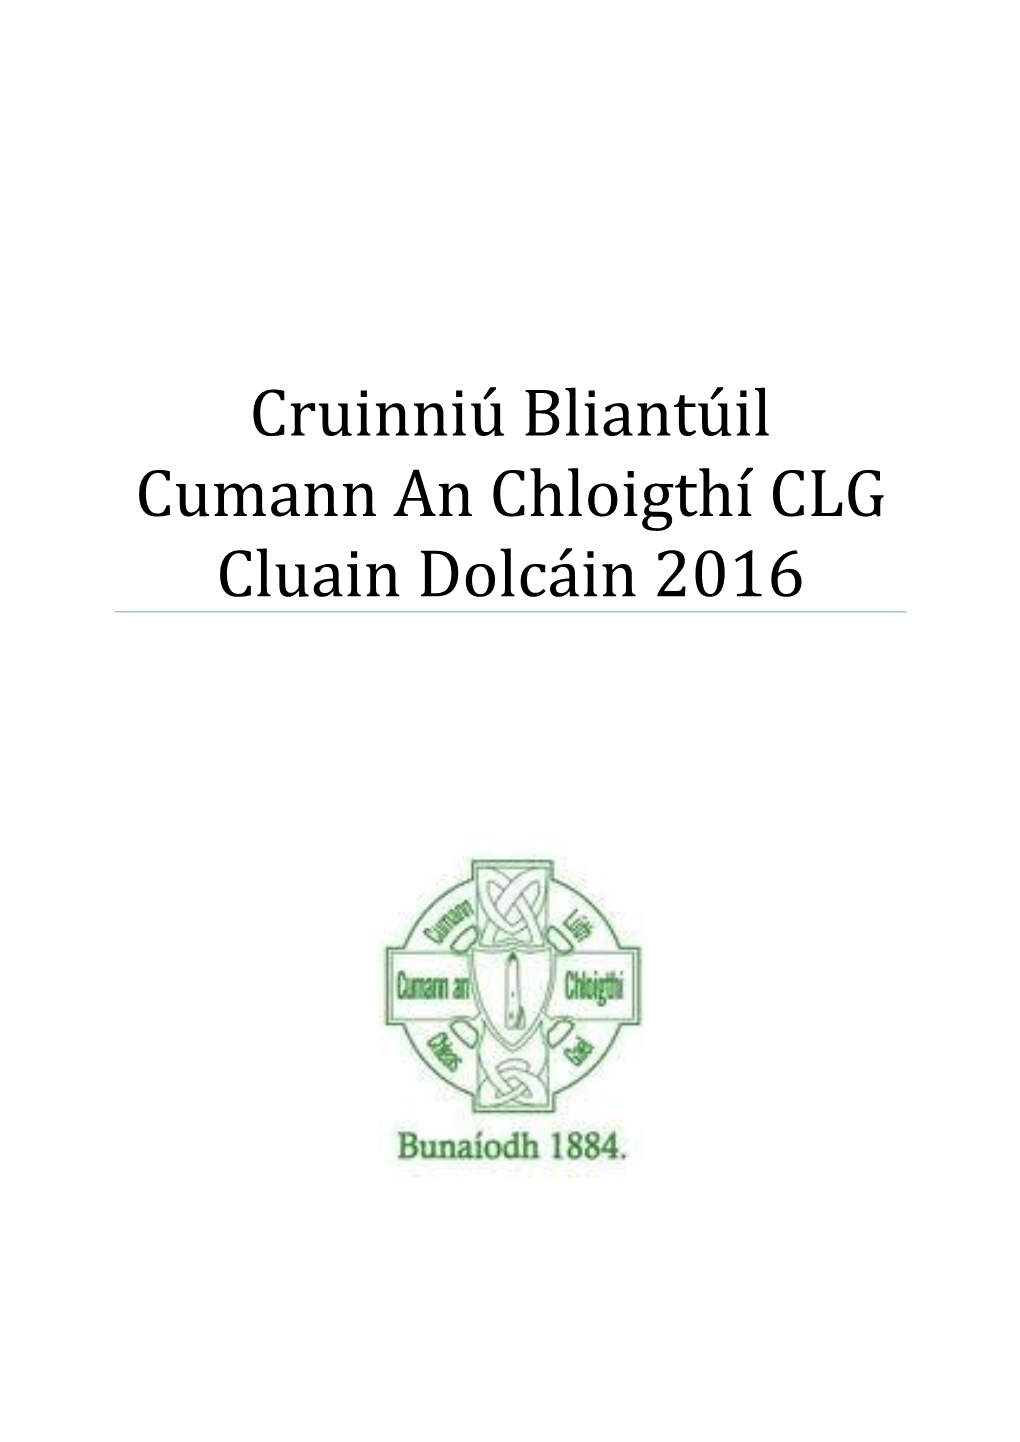 Cruinniú Bliantúil Cumann an Chloigthí CLG Cluain Dolcáin 2016